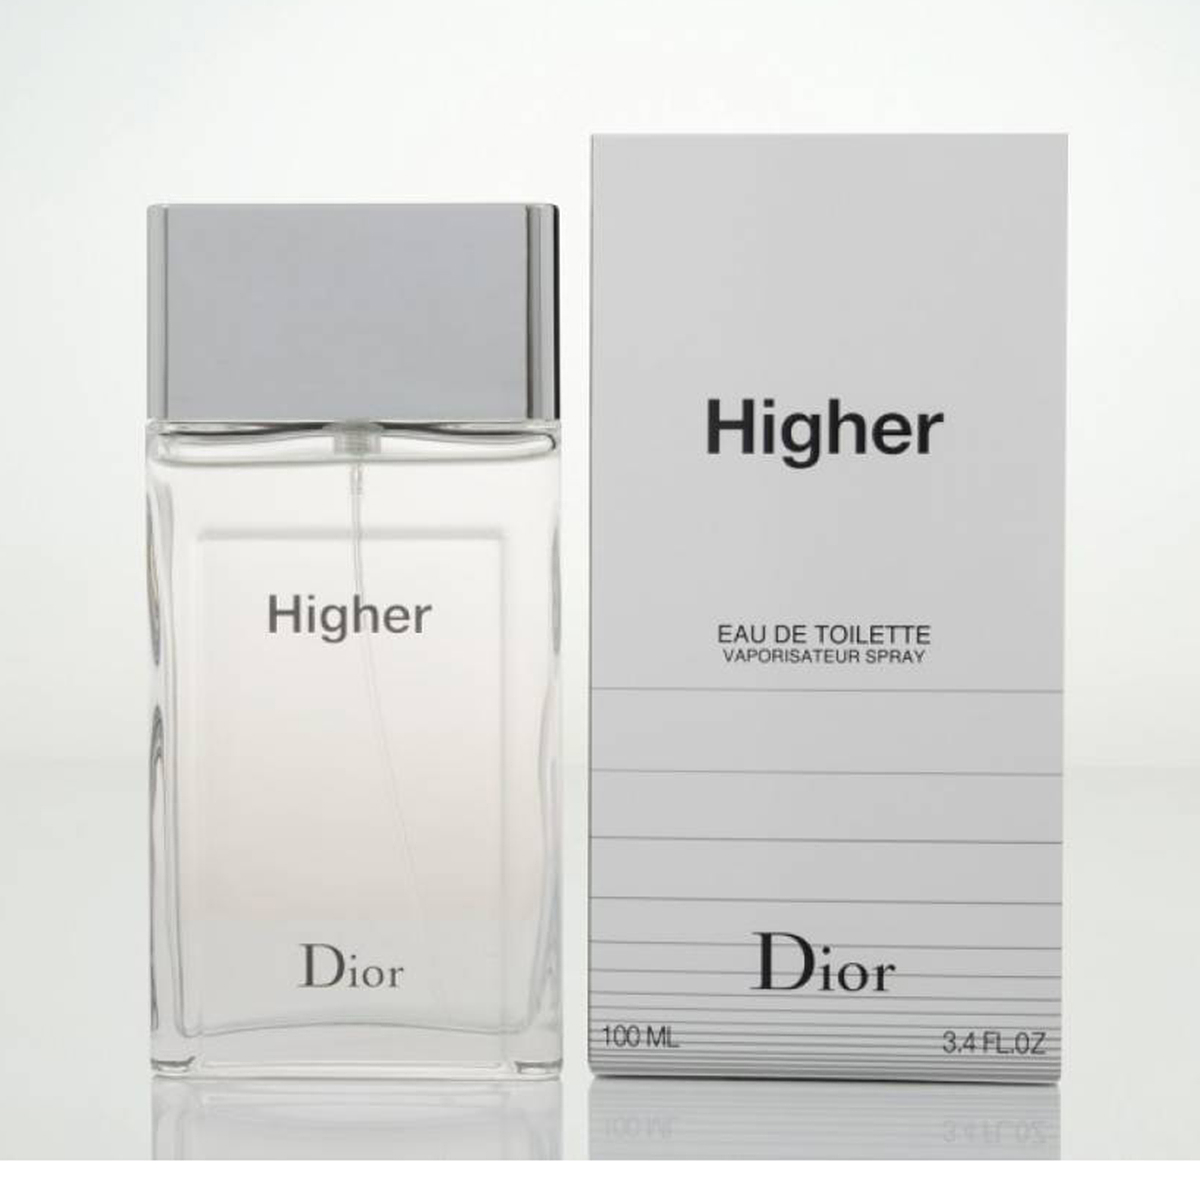 Dior Higher Eau De Toilette 100 ml